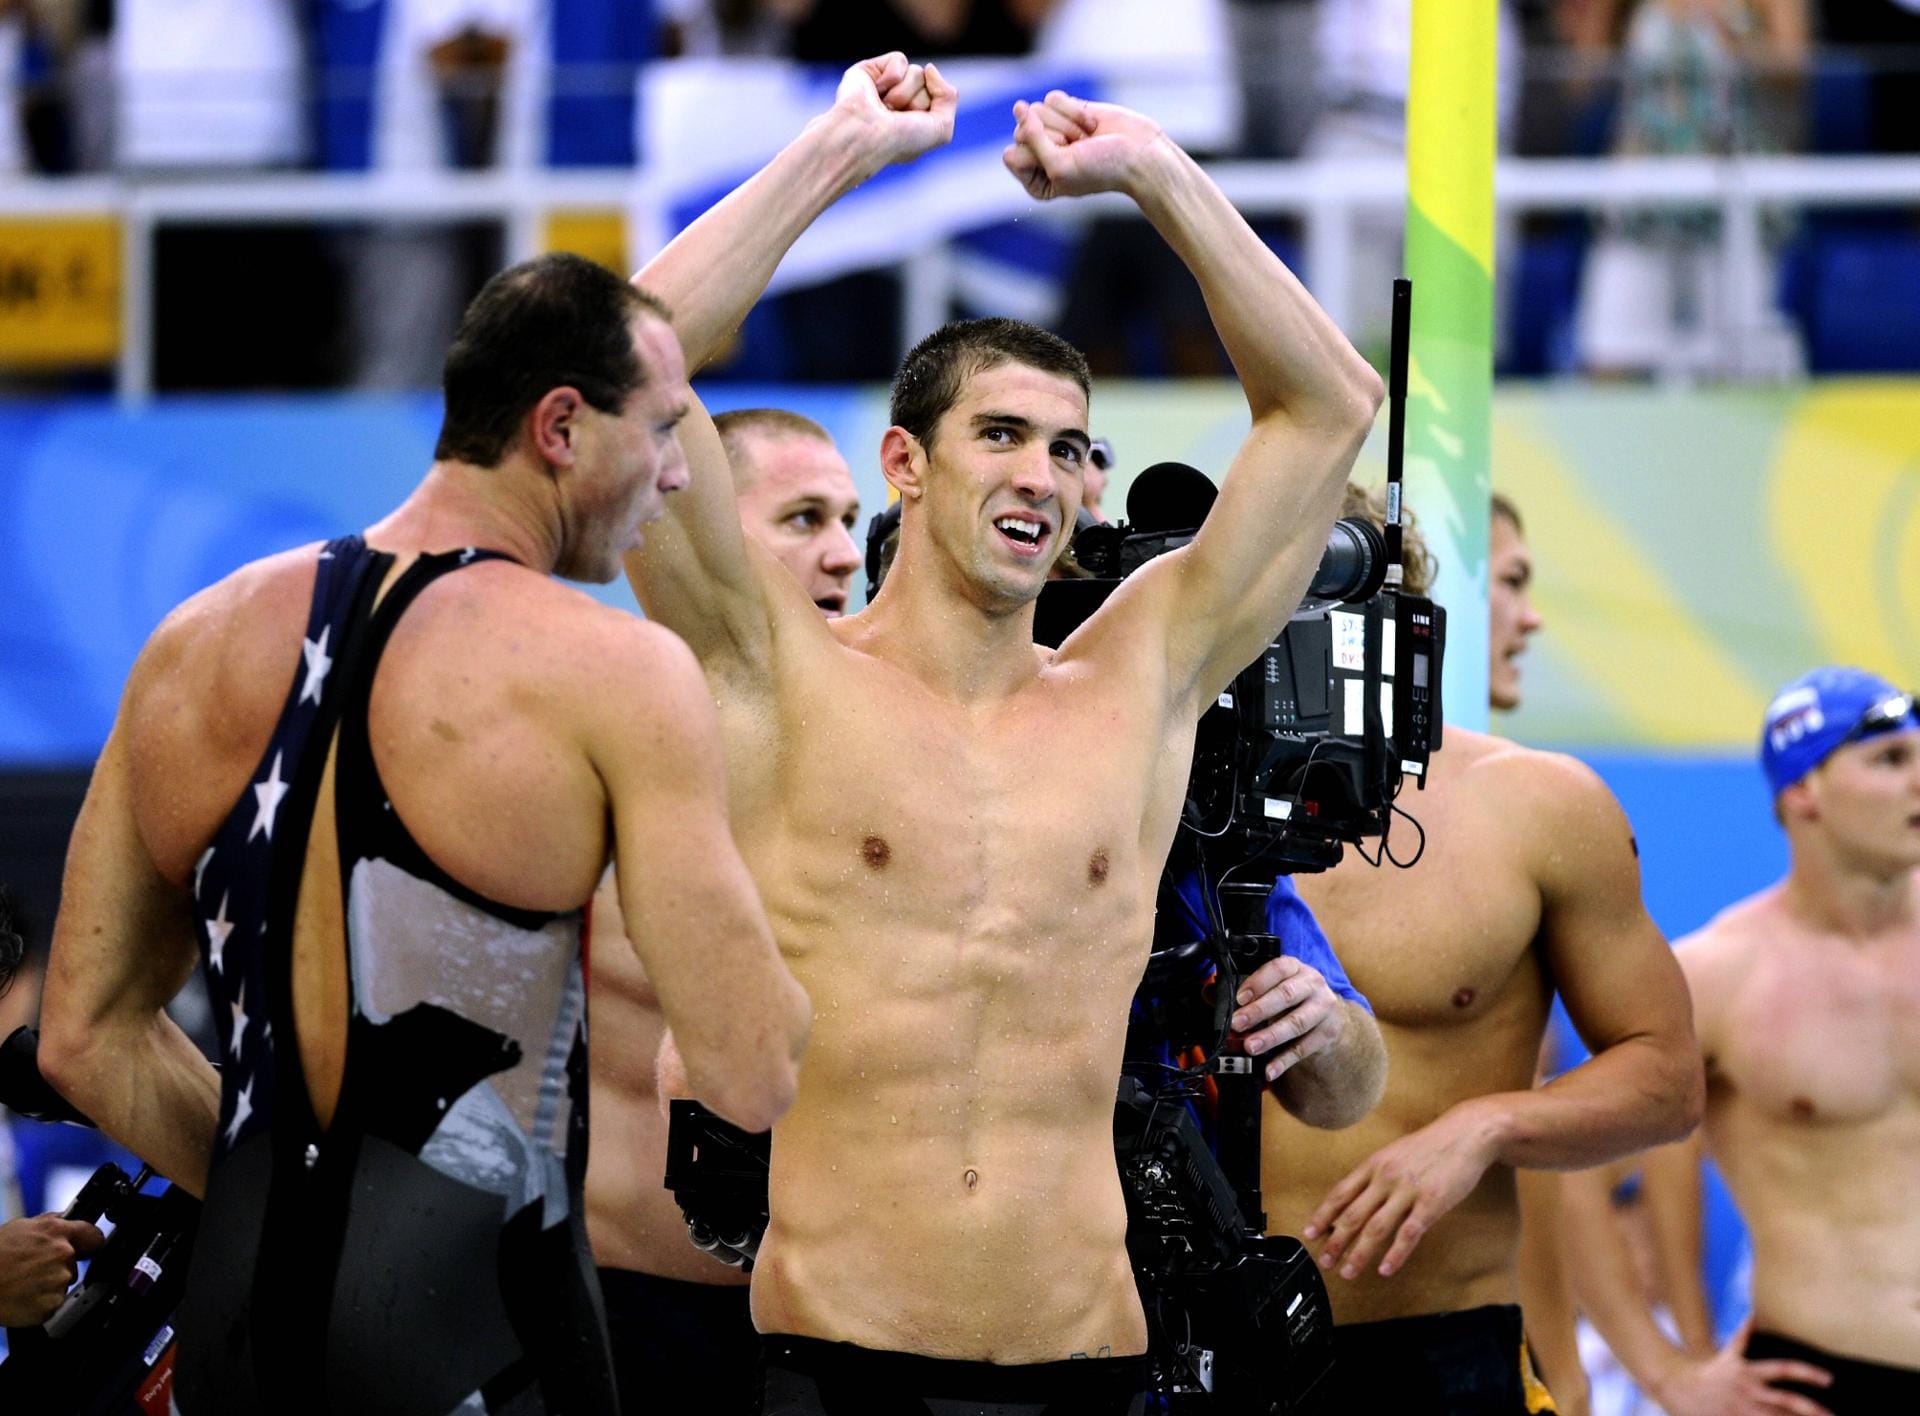 Ebenfalls 2008 schaffte der US-Schwimmer Michael Phelps schier Unglaubliches: Er gewann acht Goldmedaillen. Im Bild ist er nach seinem achten Erfolg zu sehen, mit der Lagenstaffel. Dazu kamen Siege mit beiden Freistilstaffeln sowie über 100 und 200 Meter Schmetterling, 200 Meter Freistil sowie 200 und 400 Meter Lagen. Damit übertraf Phelps sogar seinen Landsmann Mark Spitz (sieben Mal Gold bei Olympia 1972 in München).